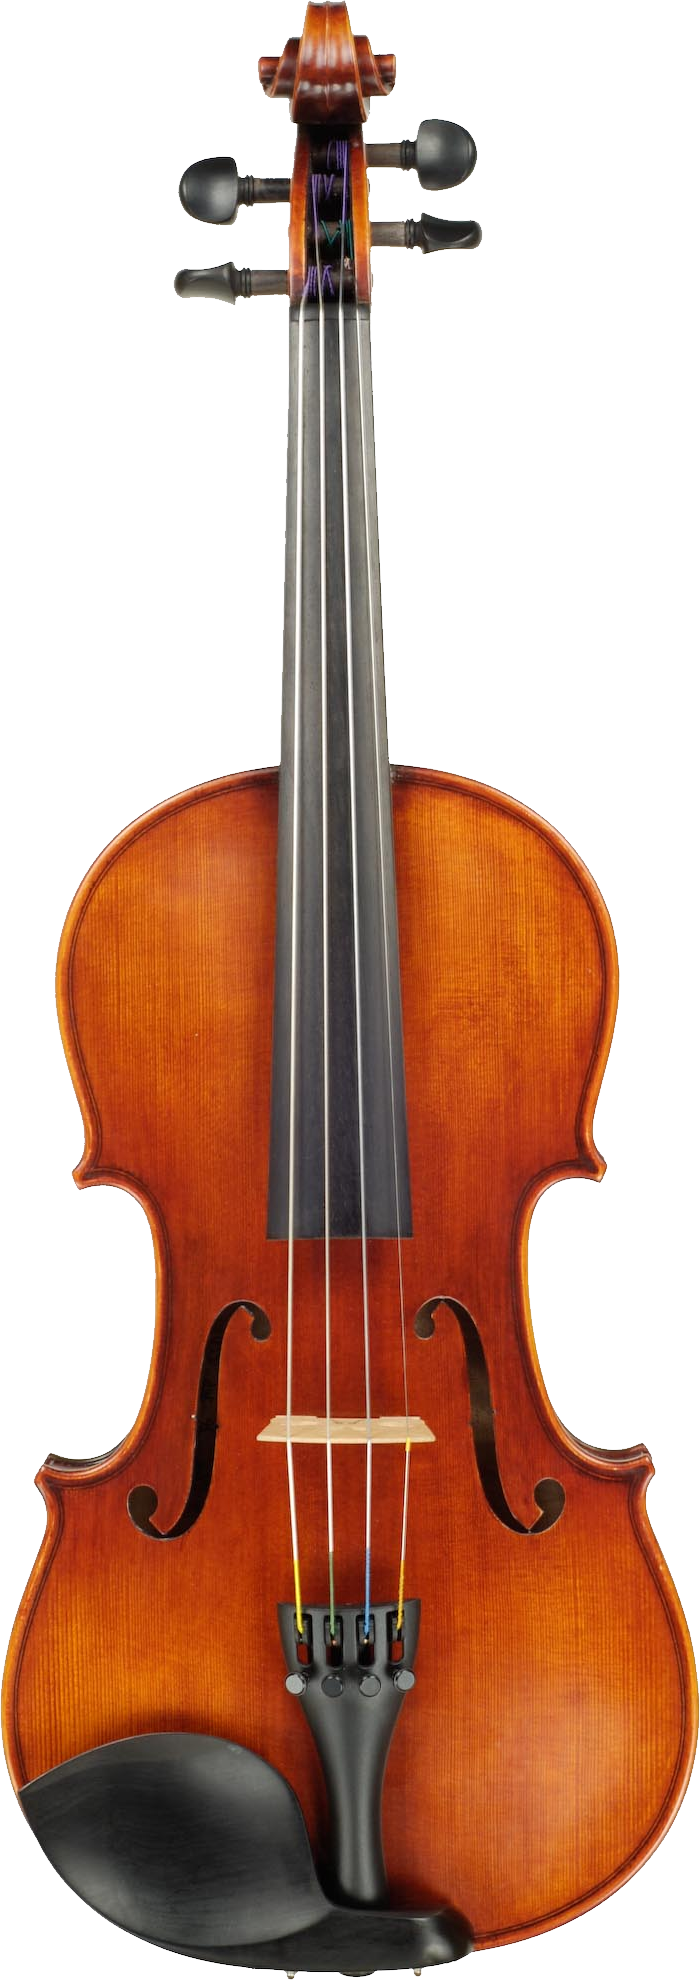 Classic Violin Portrait